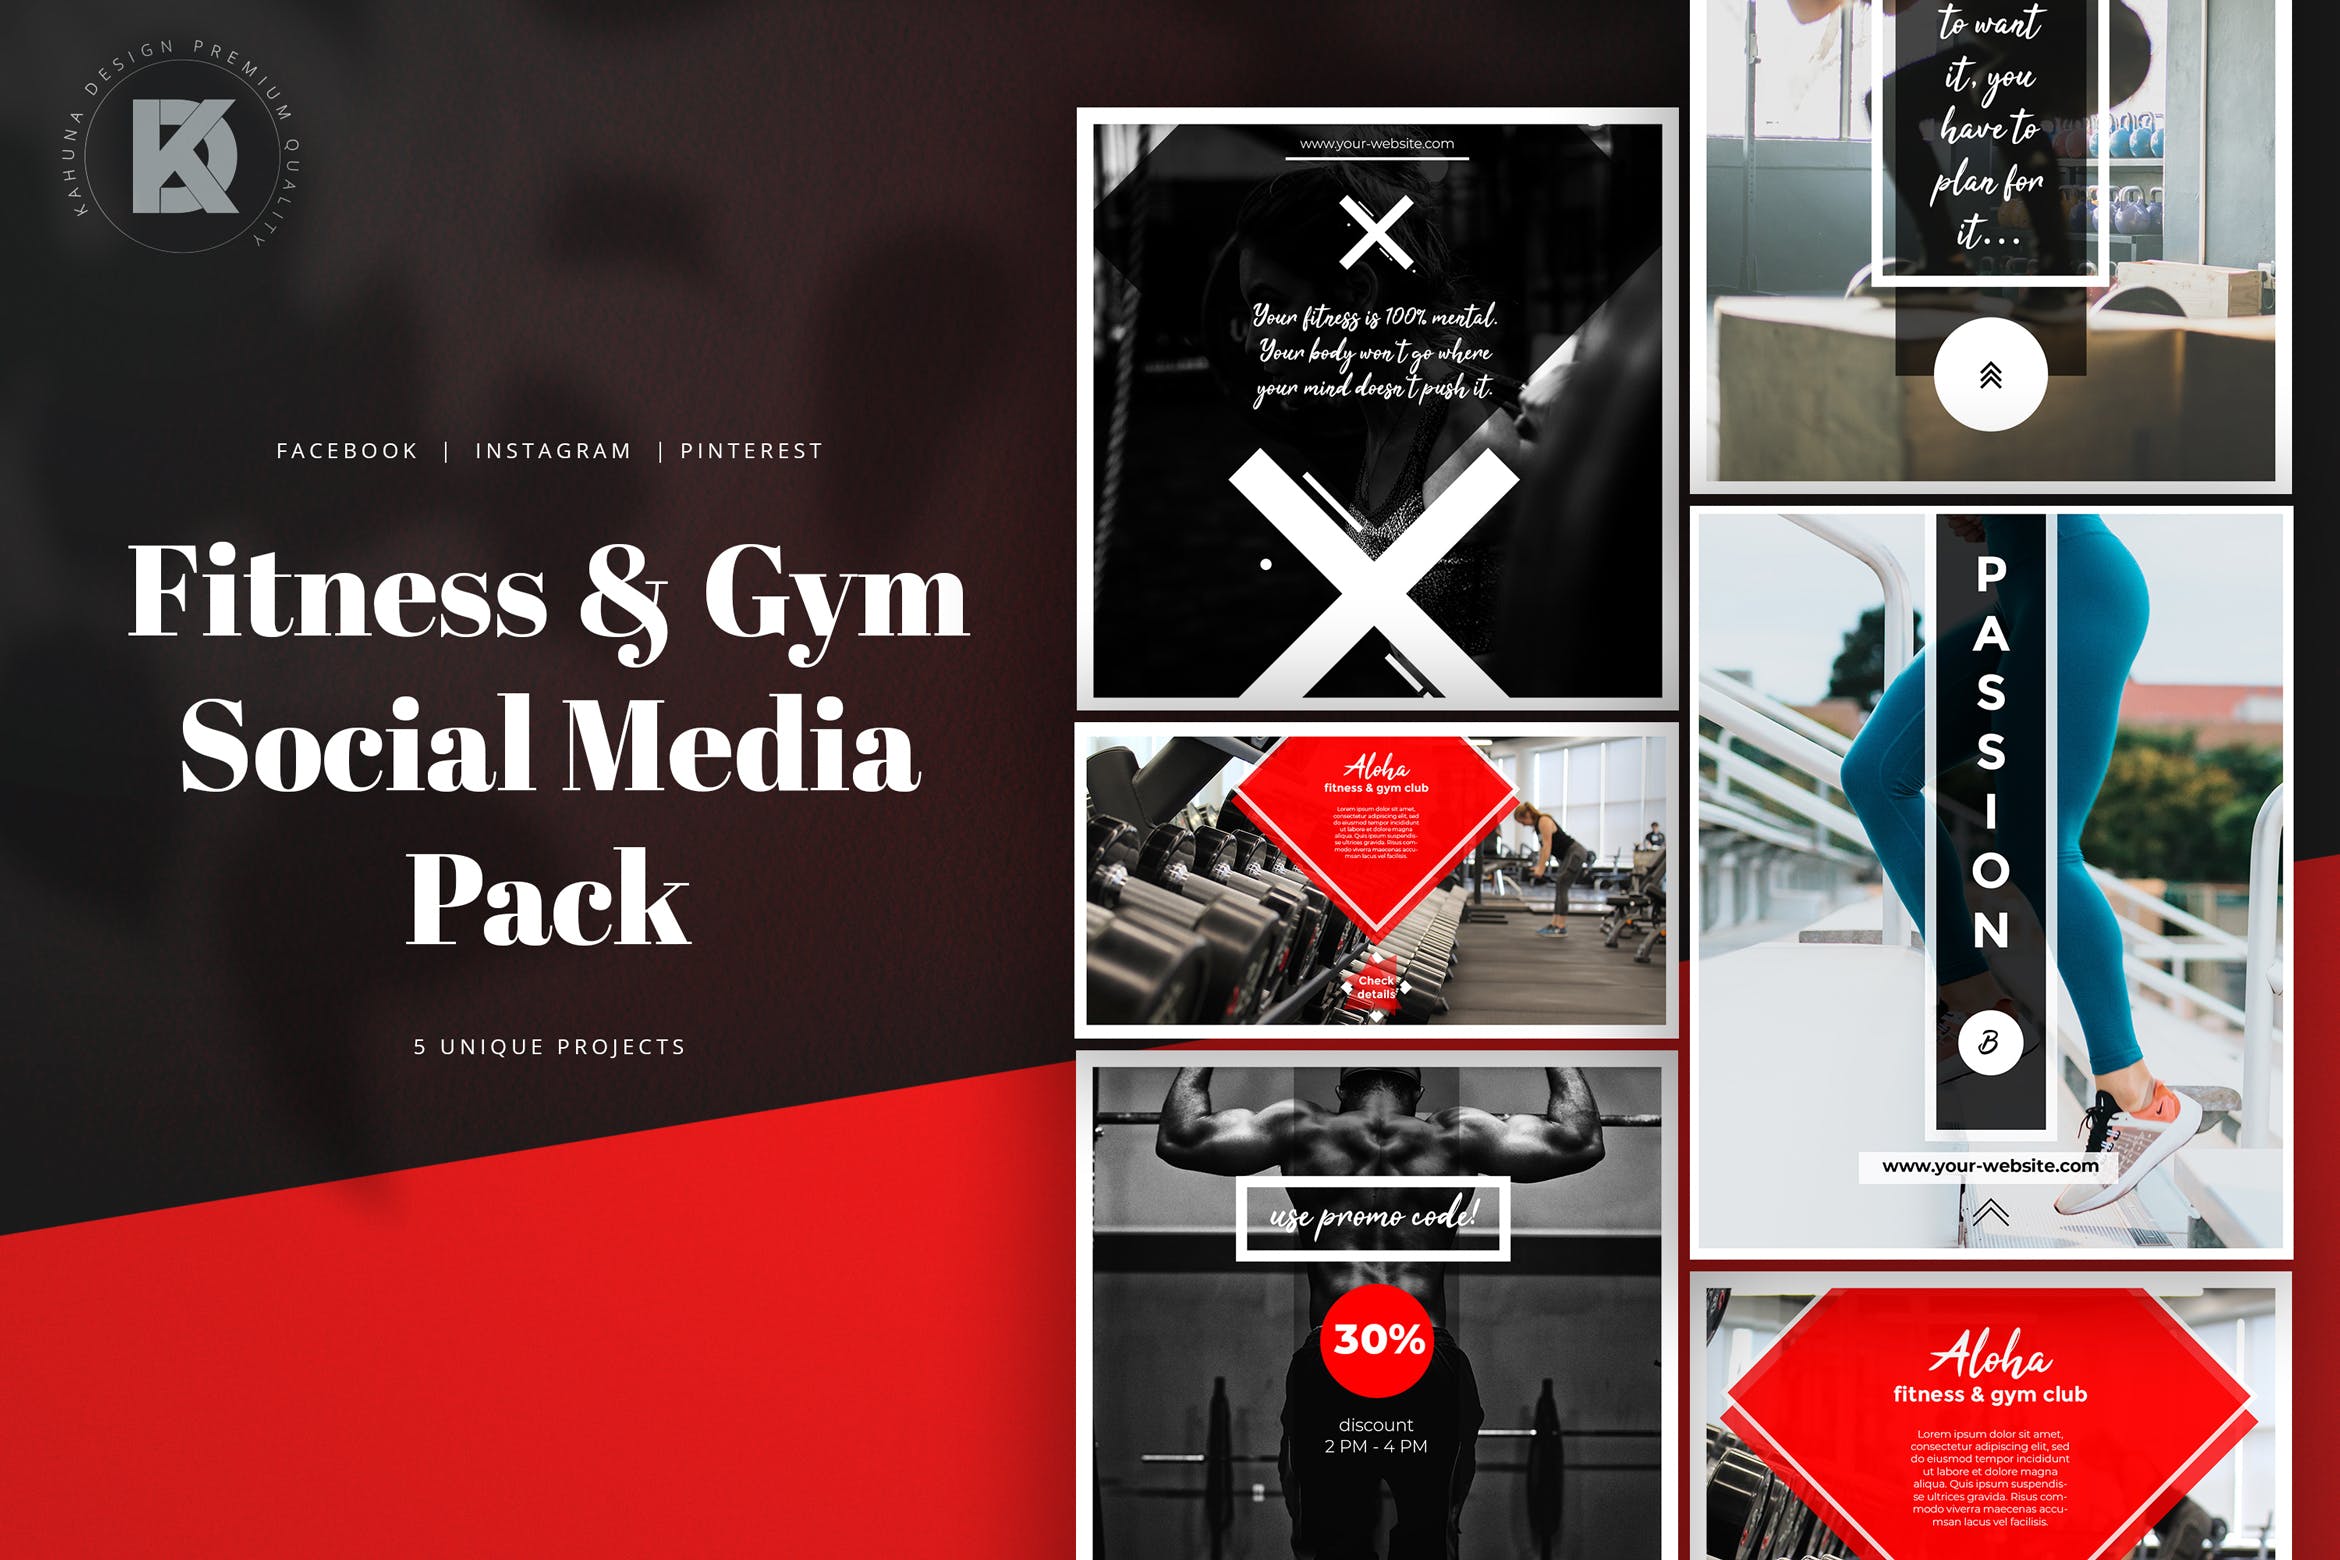 健身/健身房社交媒体横幅广告设计模板蚂蚁素材精选 Fitness & Gym Social Media Banners Pack插图